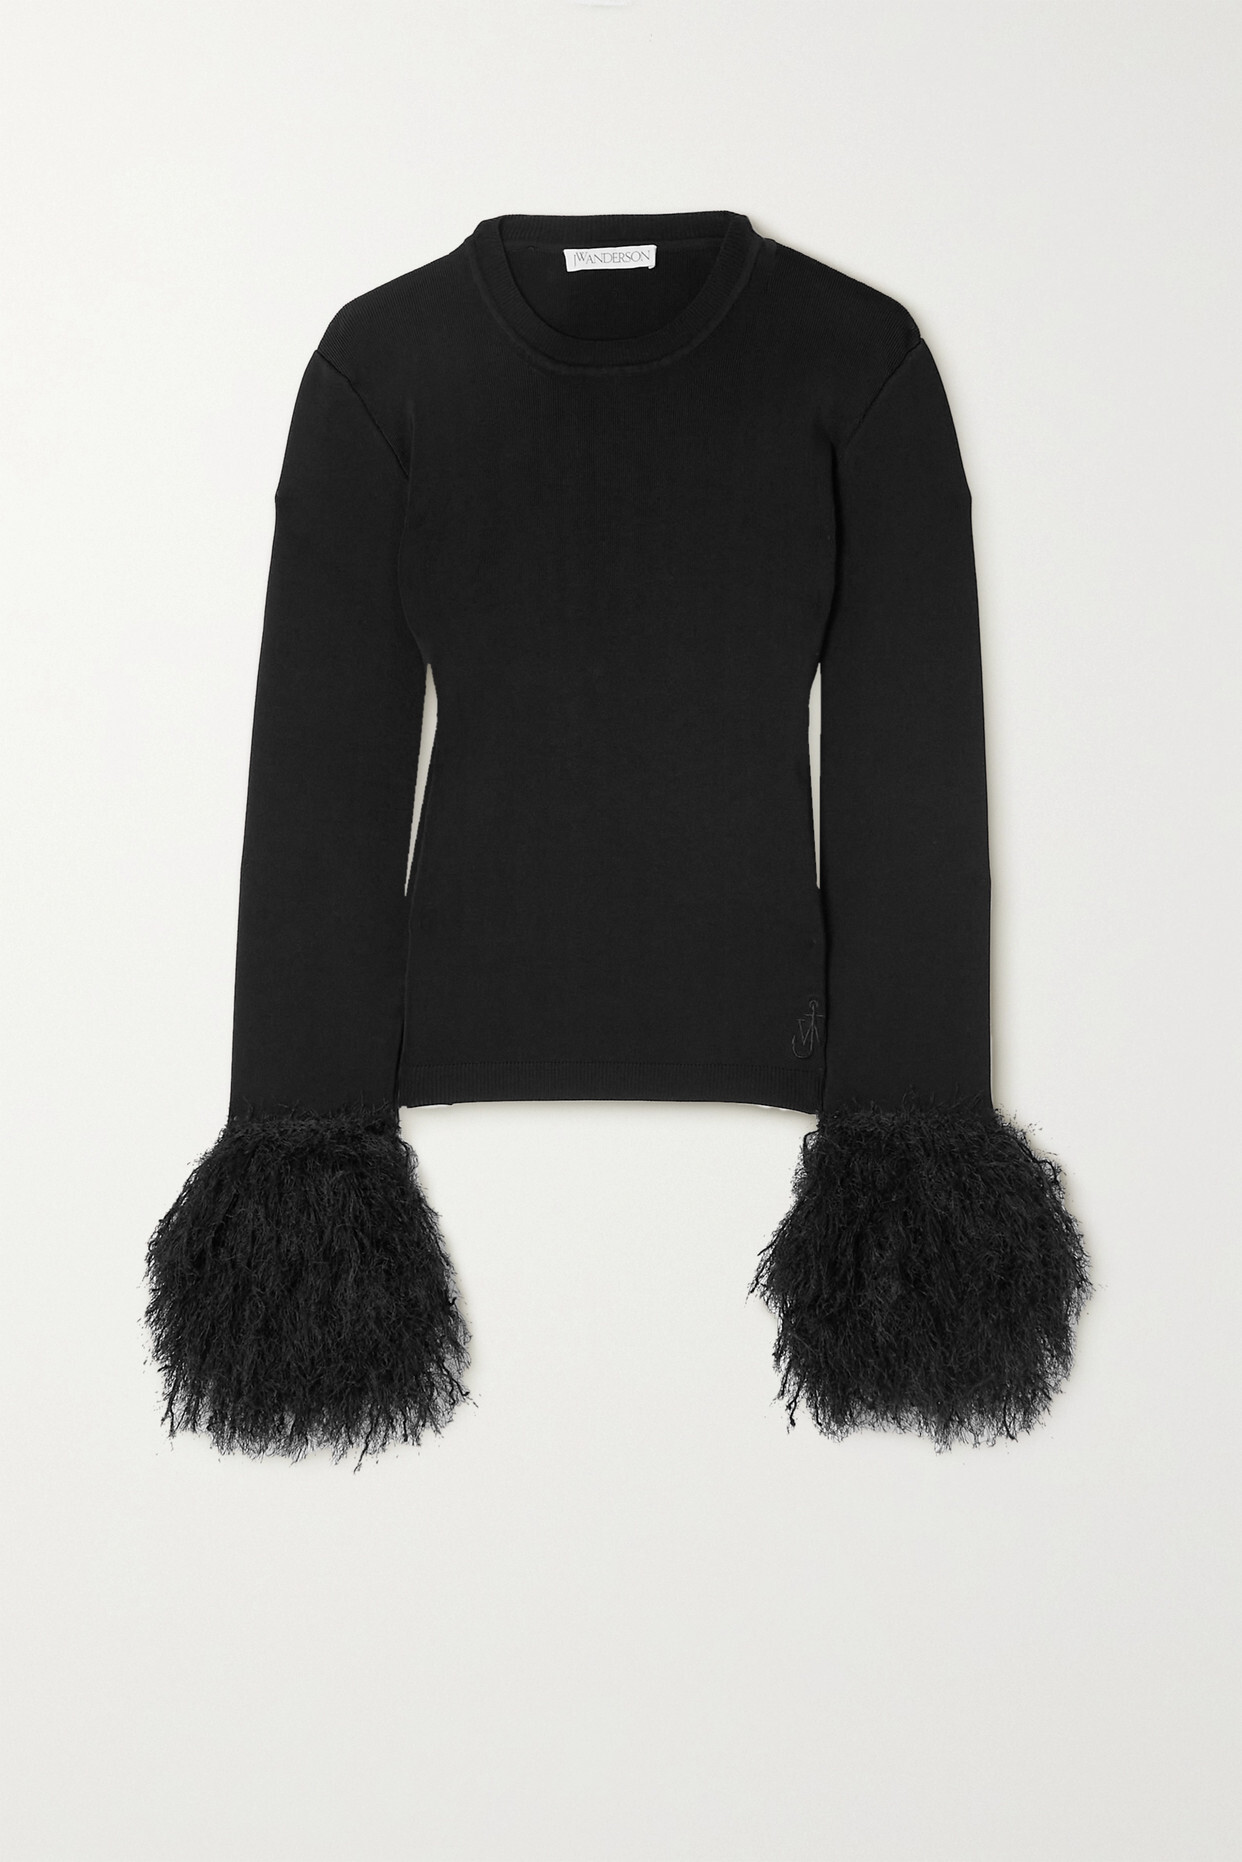 JW Anderson - Pom Pom Fringed Stretch-knit Sweater - Black